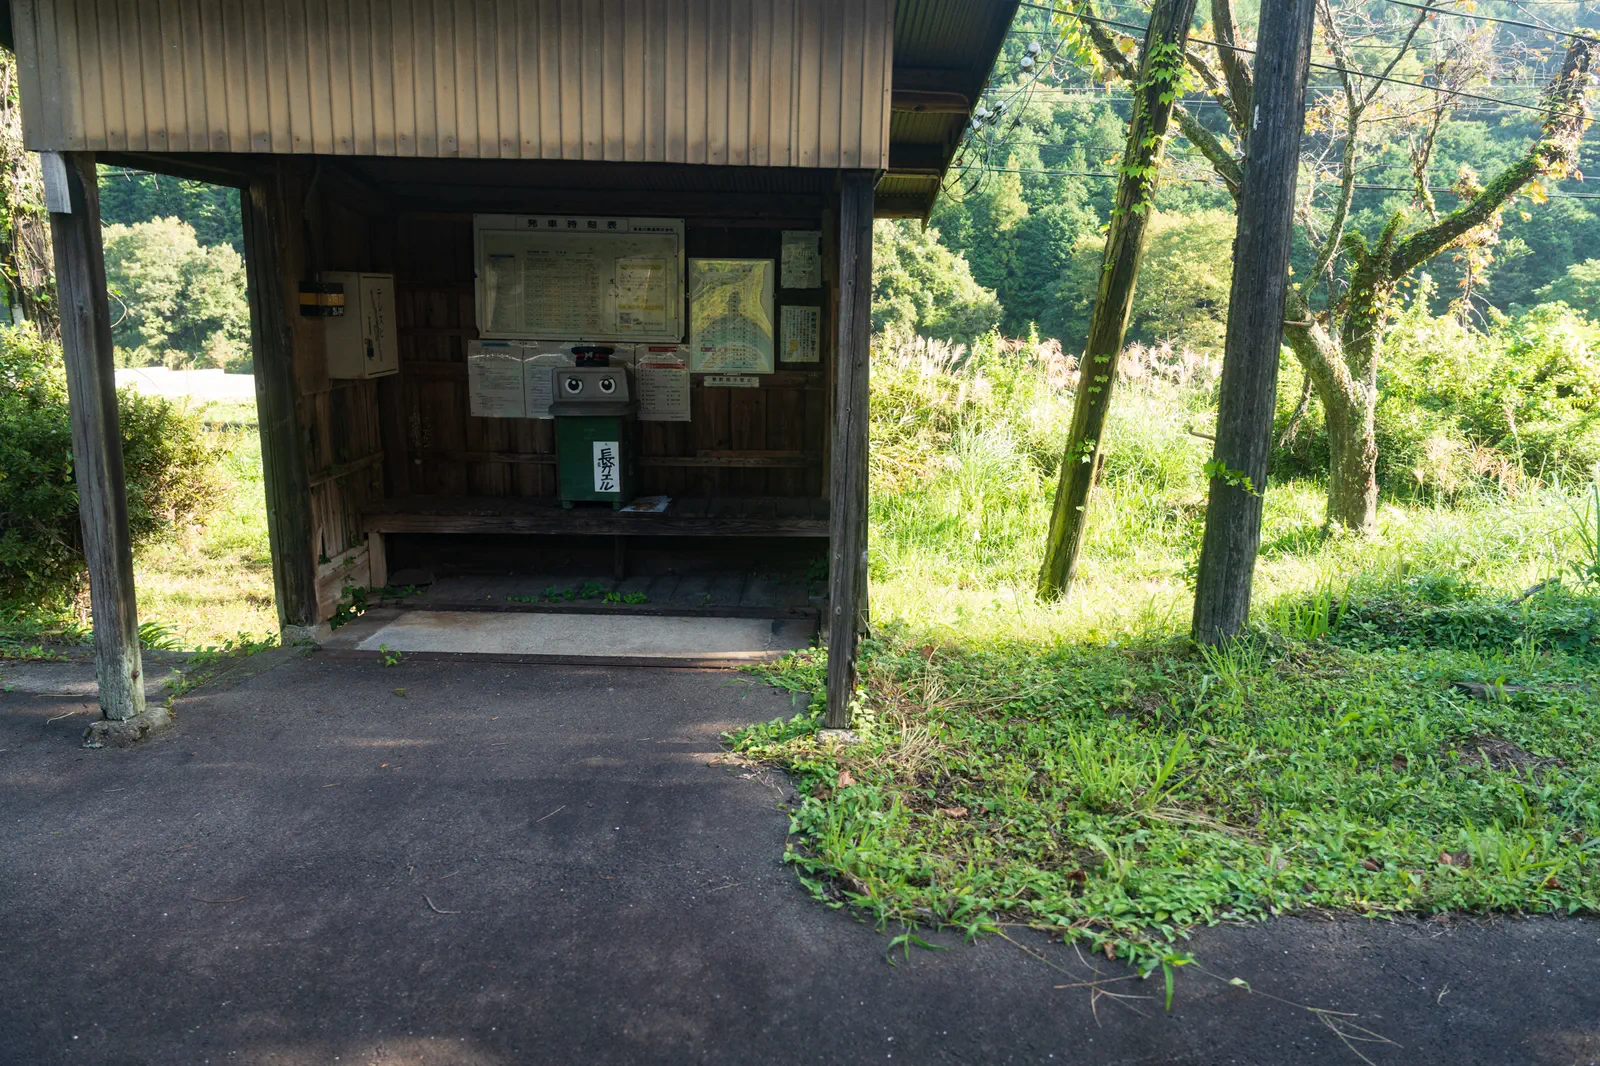 駅の待合所になっている小さい小屋と、そこに置かれている緑色のゴミ箱（目がかいてあり、長カエルという名札がついている